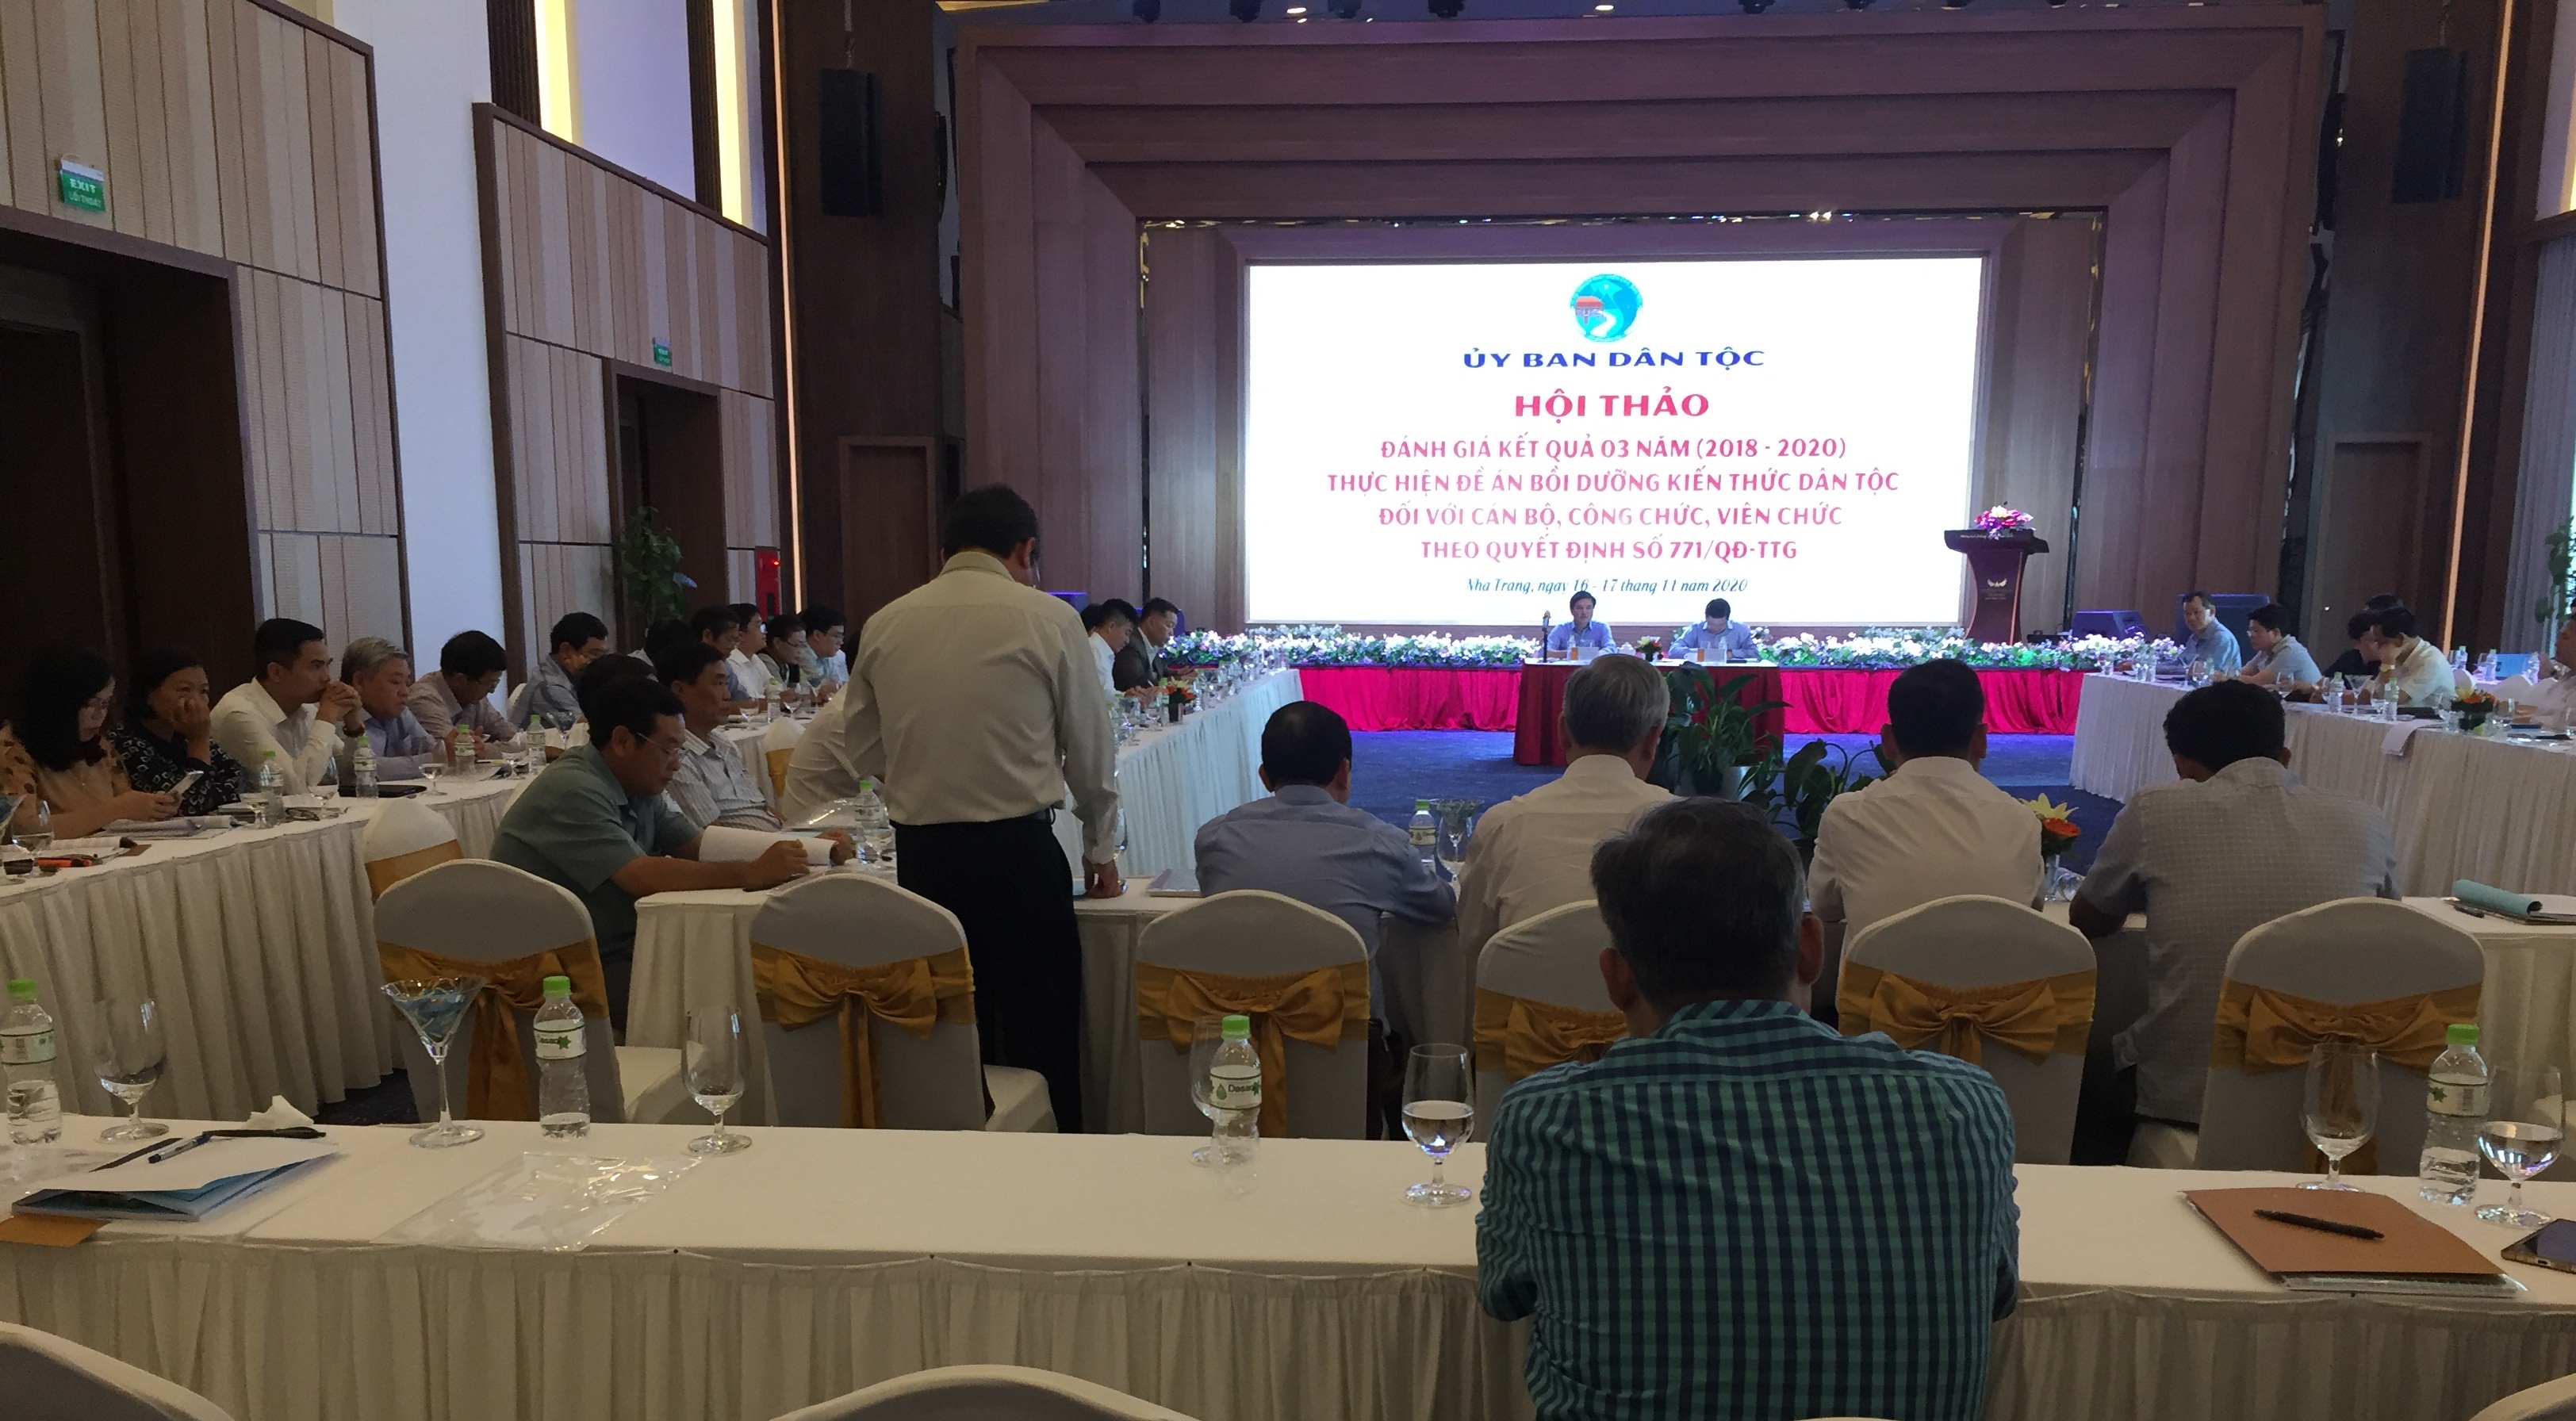 Ủy ban Dân tộc tổ chức Hội thảo đánh giá kết quả 3 năm thực hiện Đề án bồi dưỡng kiến thức dân tộc đối với cán bộ, công chức, viên chức theo Quyết định 771/QĐ-TTg tại thành phố Nha Trang